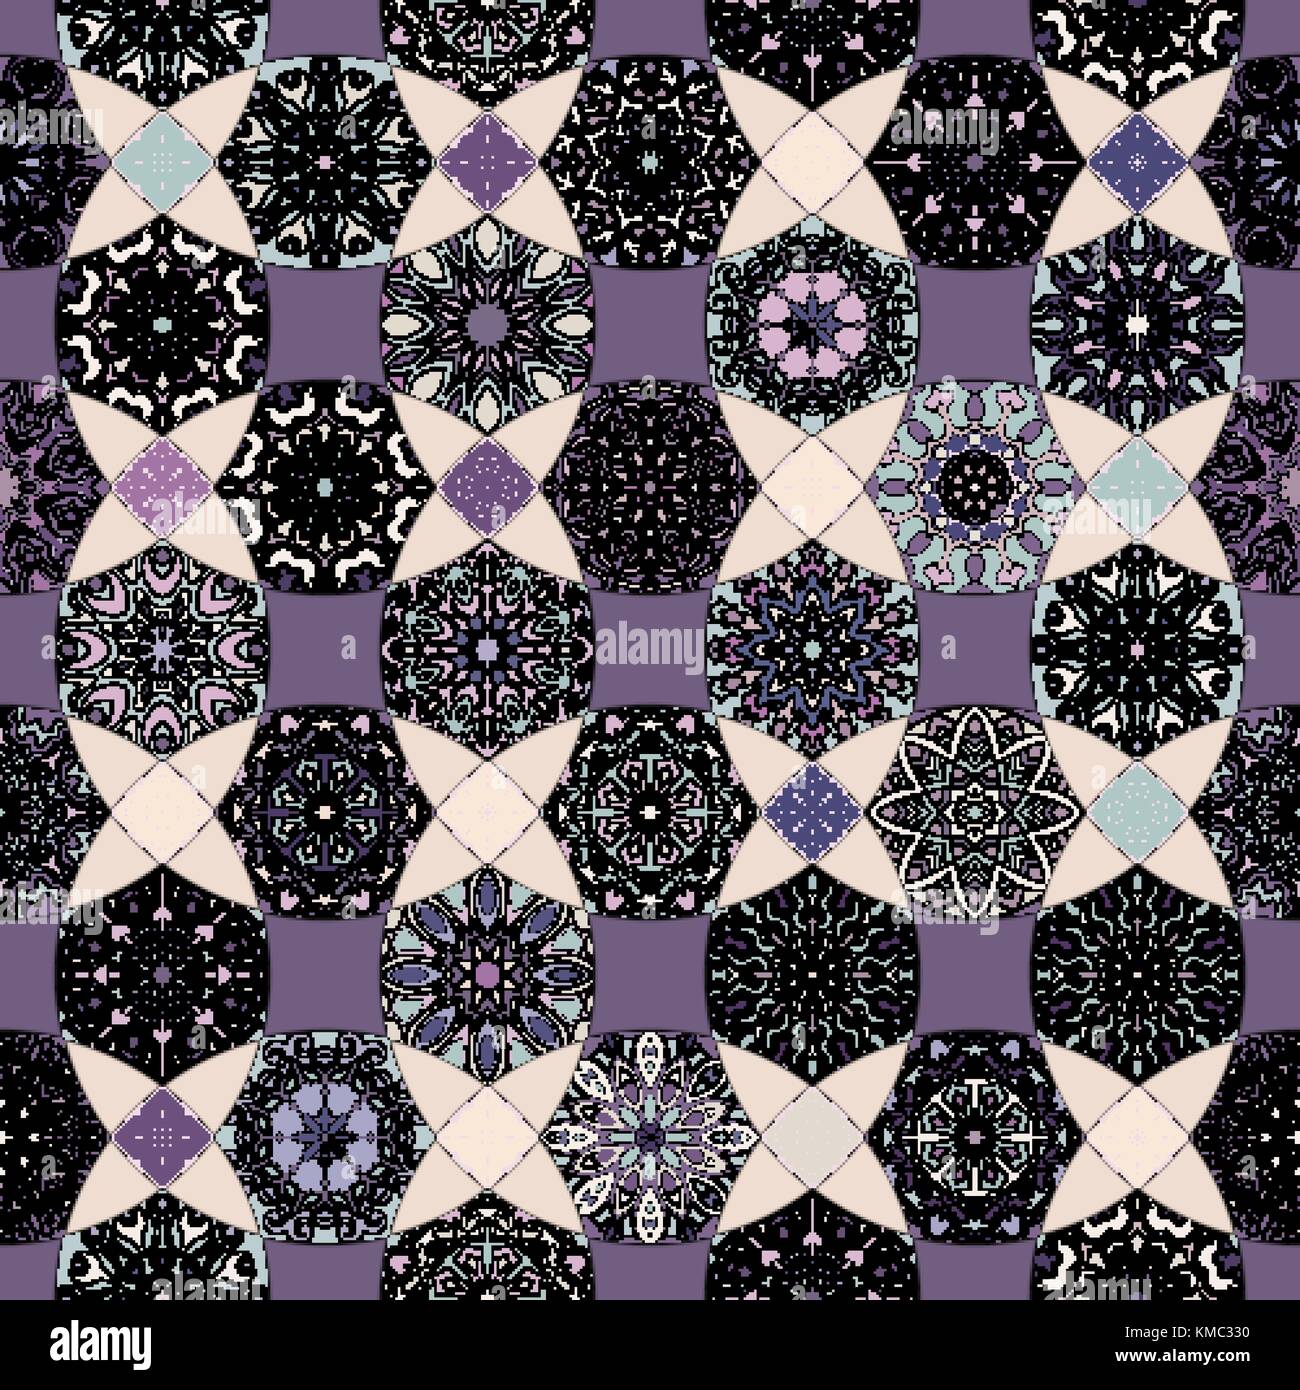 Bunte vintage nahtlose Muster mit floralen und Mandala Elemente. Hand gezeichnet Hintergrund. Kann für Textilien, Tapeten, Fliesen, Verpackung benutzt werden, umfasst ein Stock Vektor